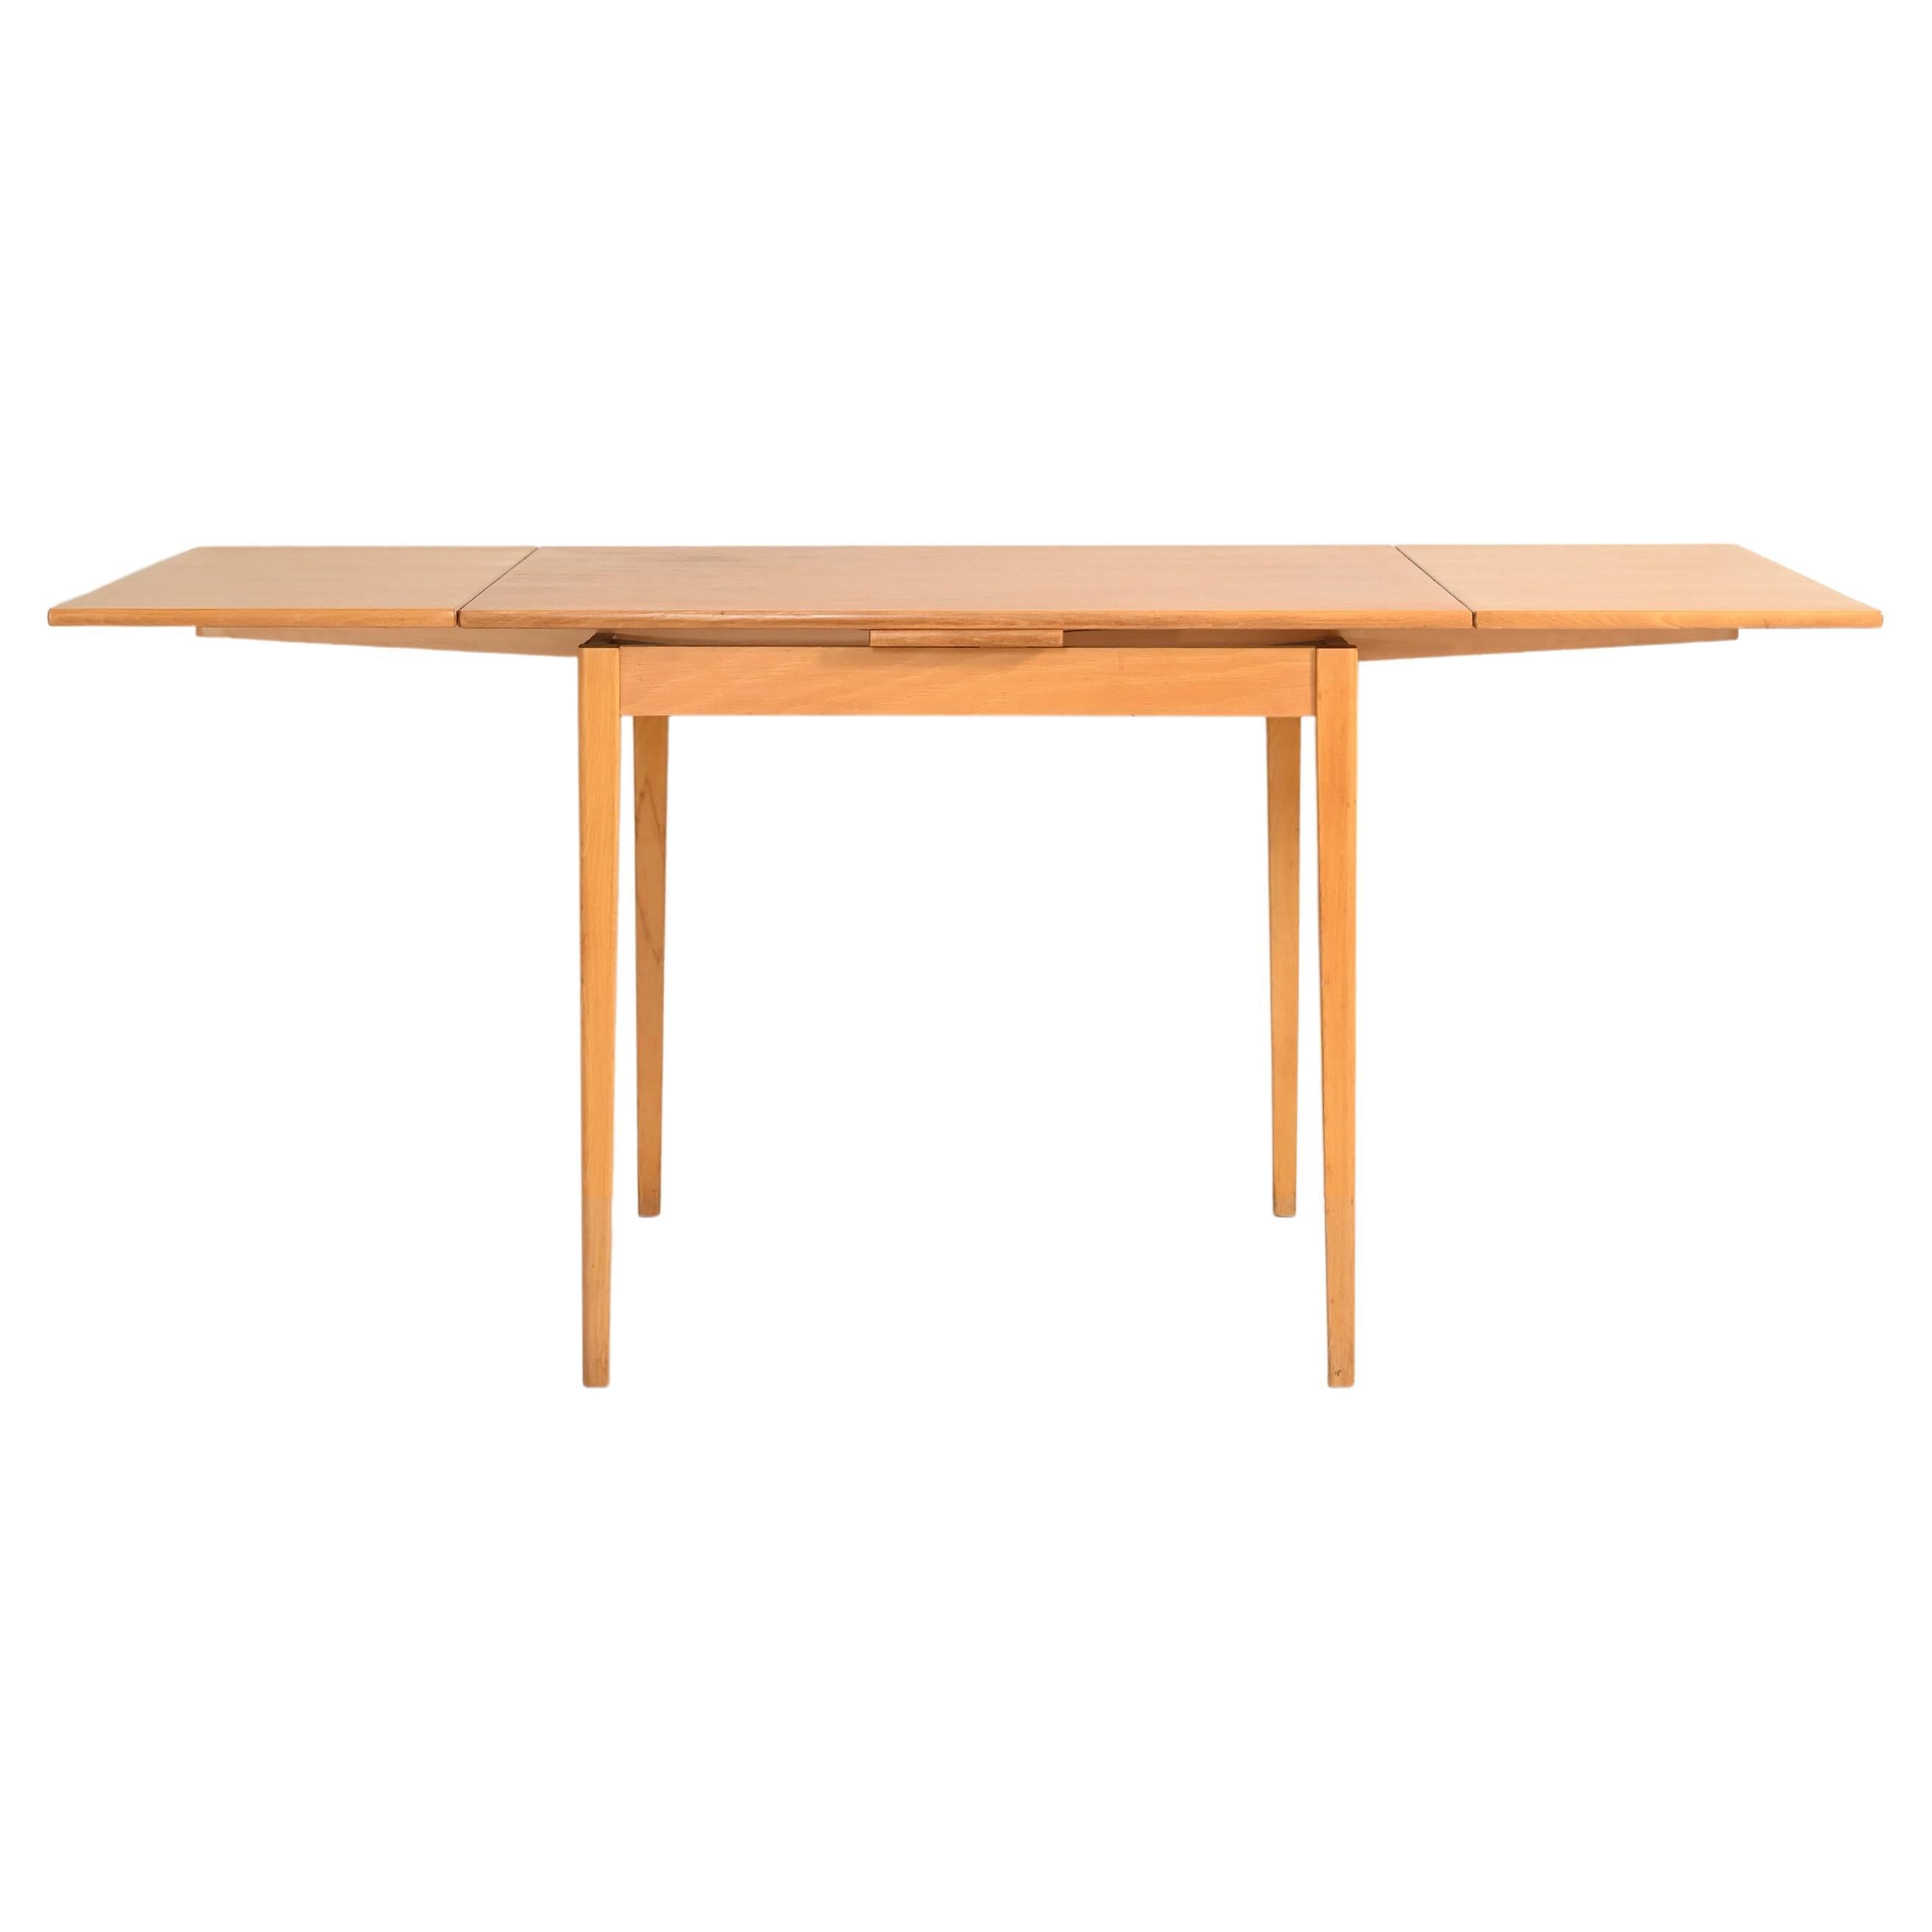 Swedish Vintage Extendable Teak Wood Table